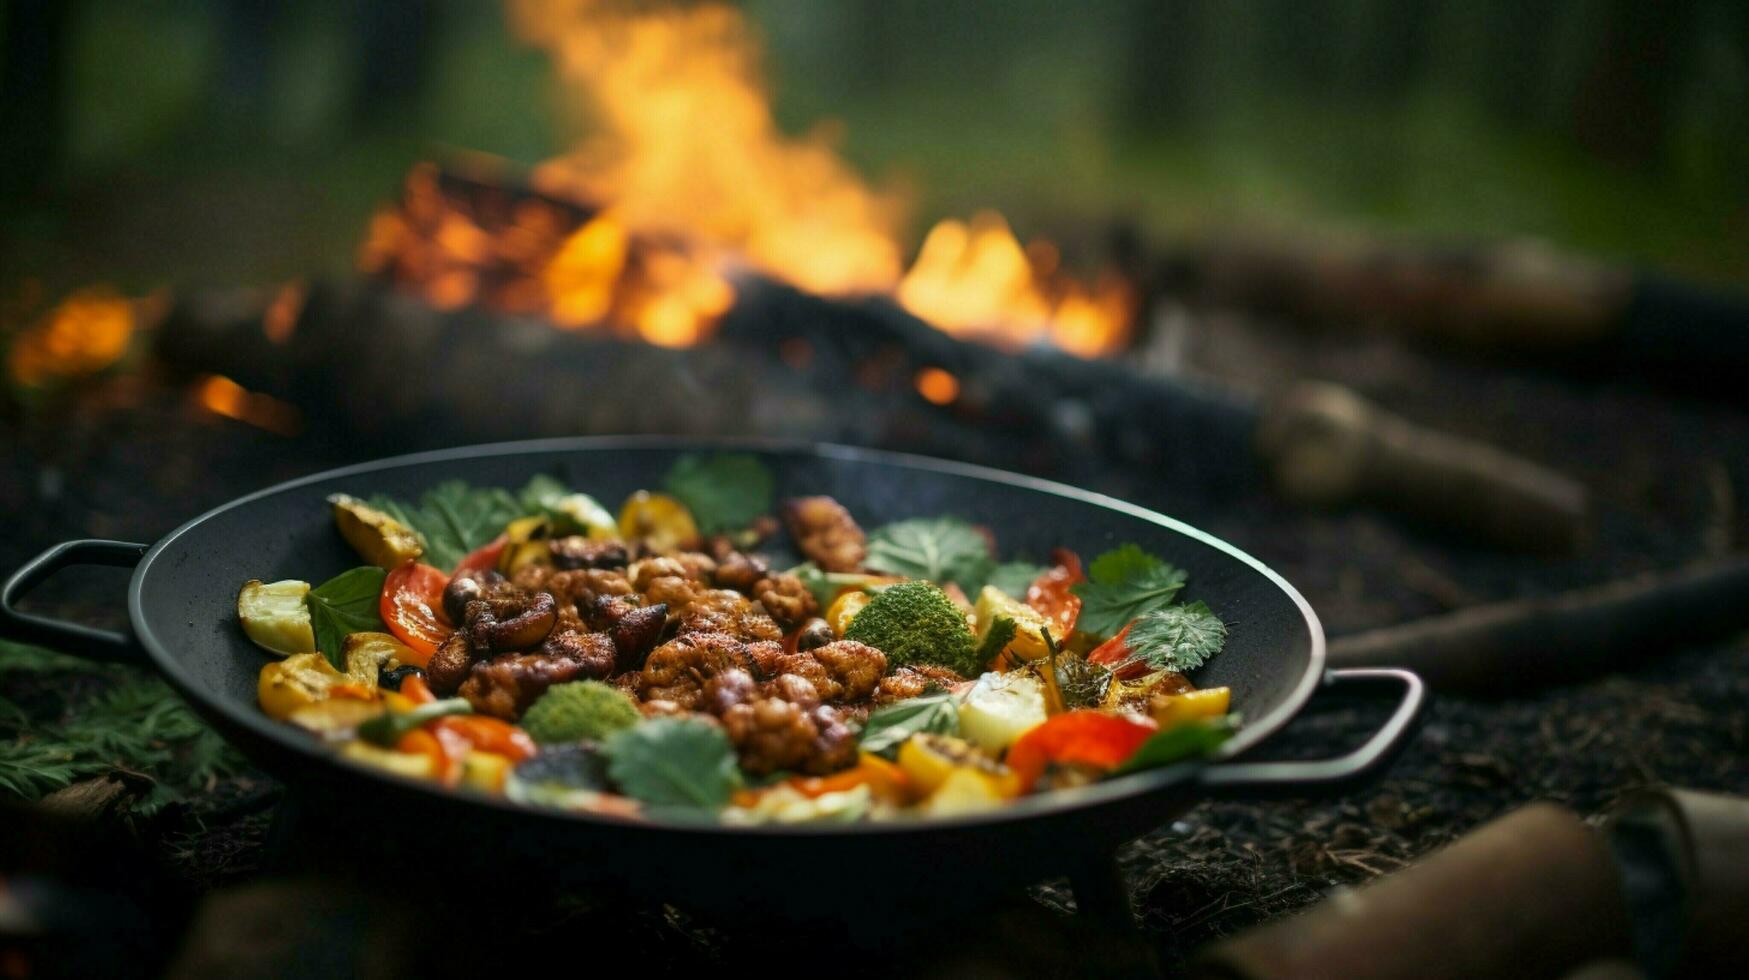 sano vegetariano comida cocido al aire libre en madera fuego foto